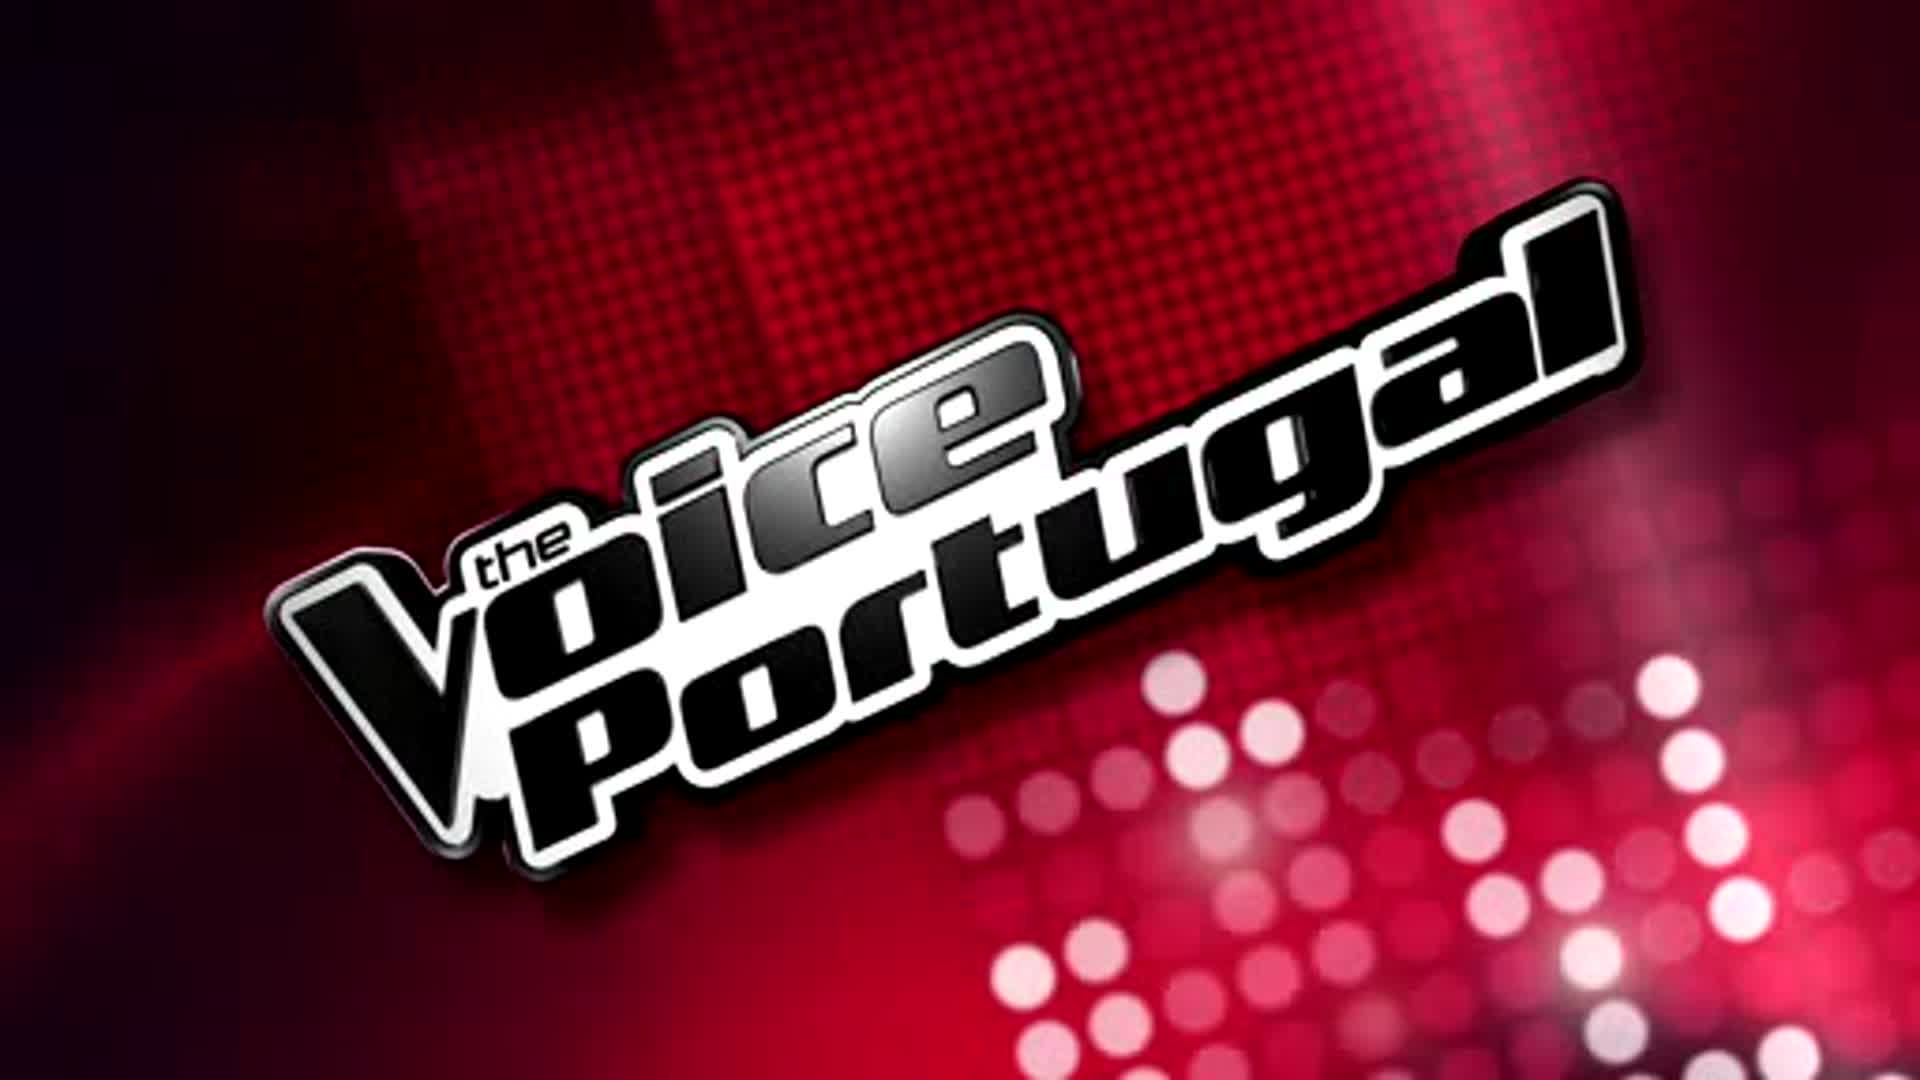 E07B23D2D11545758649C53B0502C3231 8 Este Domingo Não Há «The Voice Portugal»